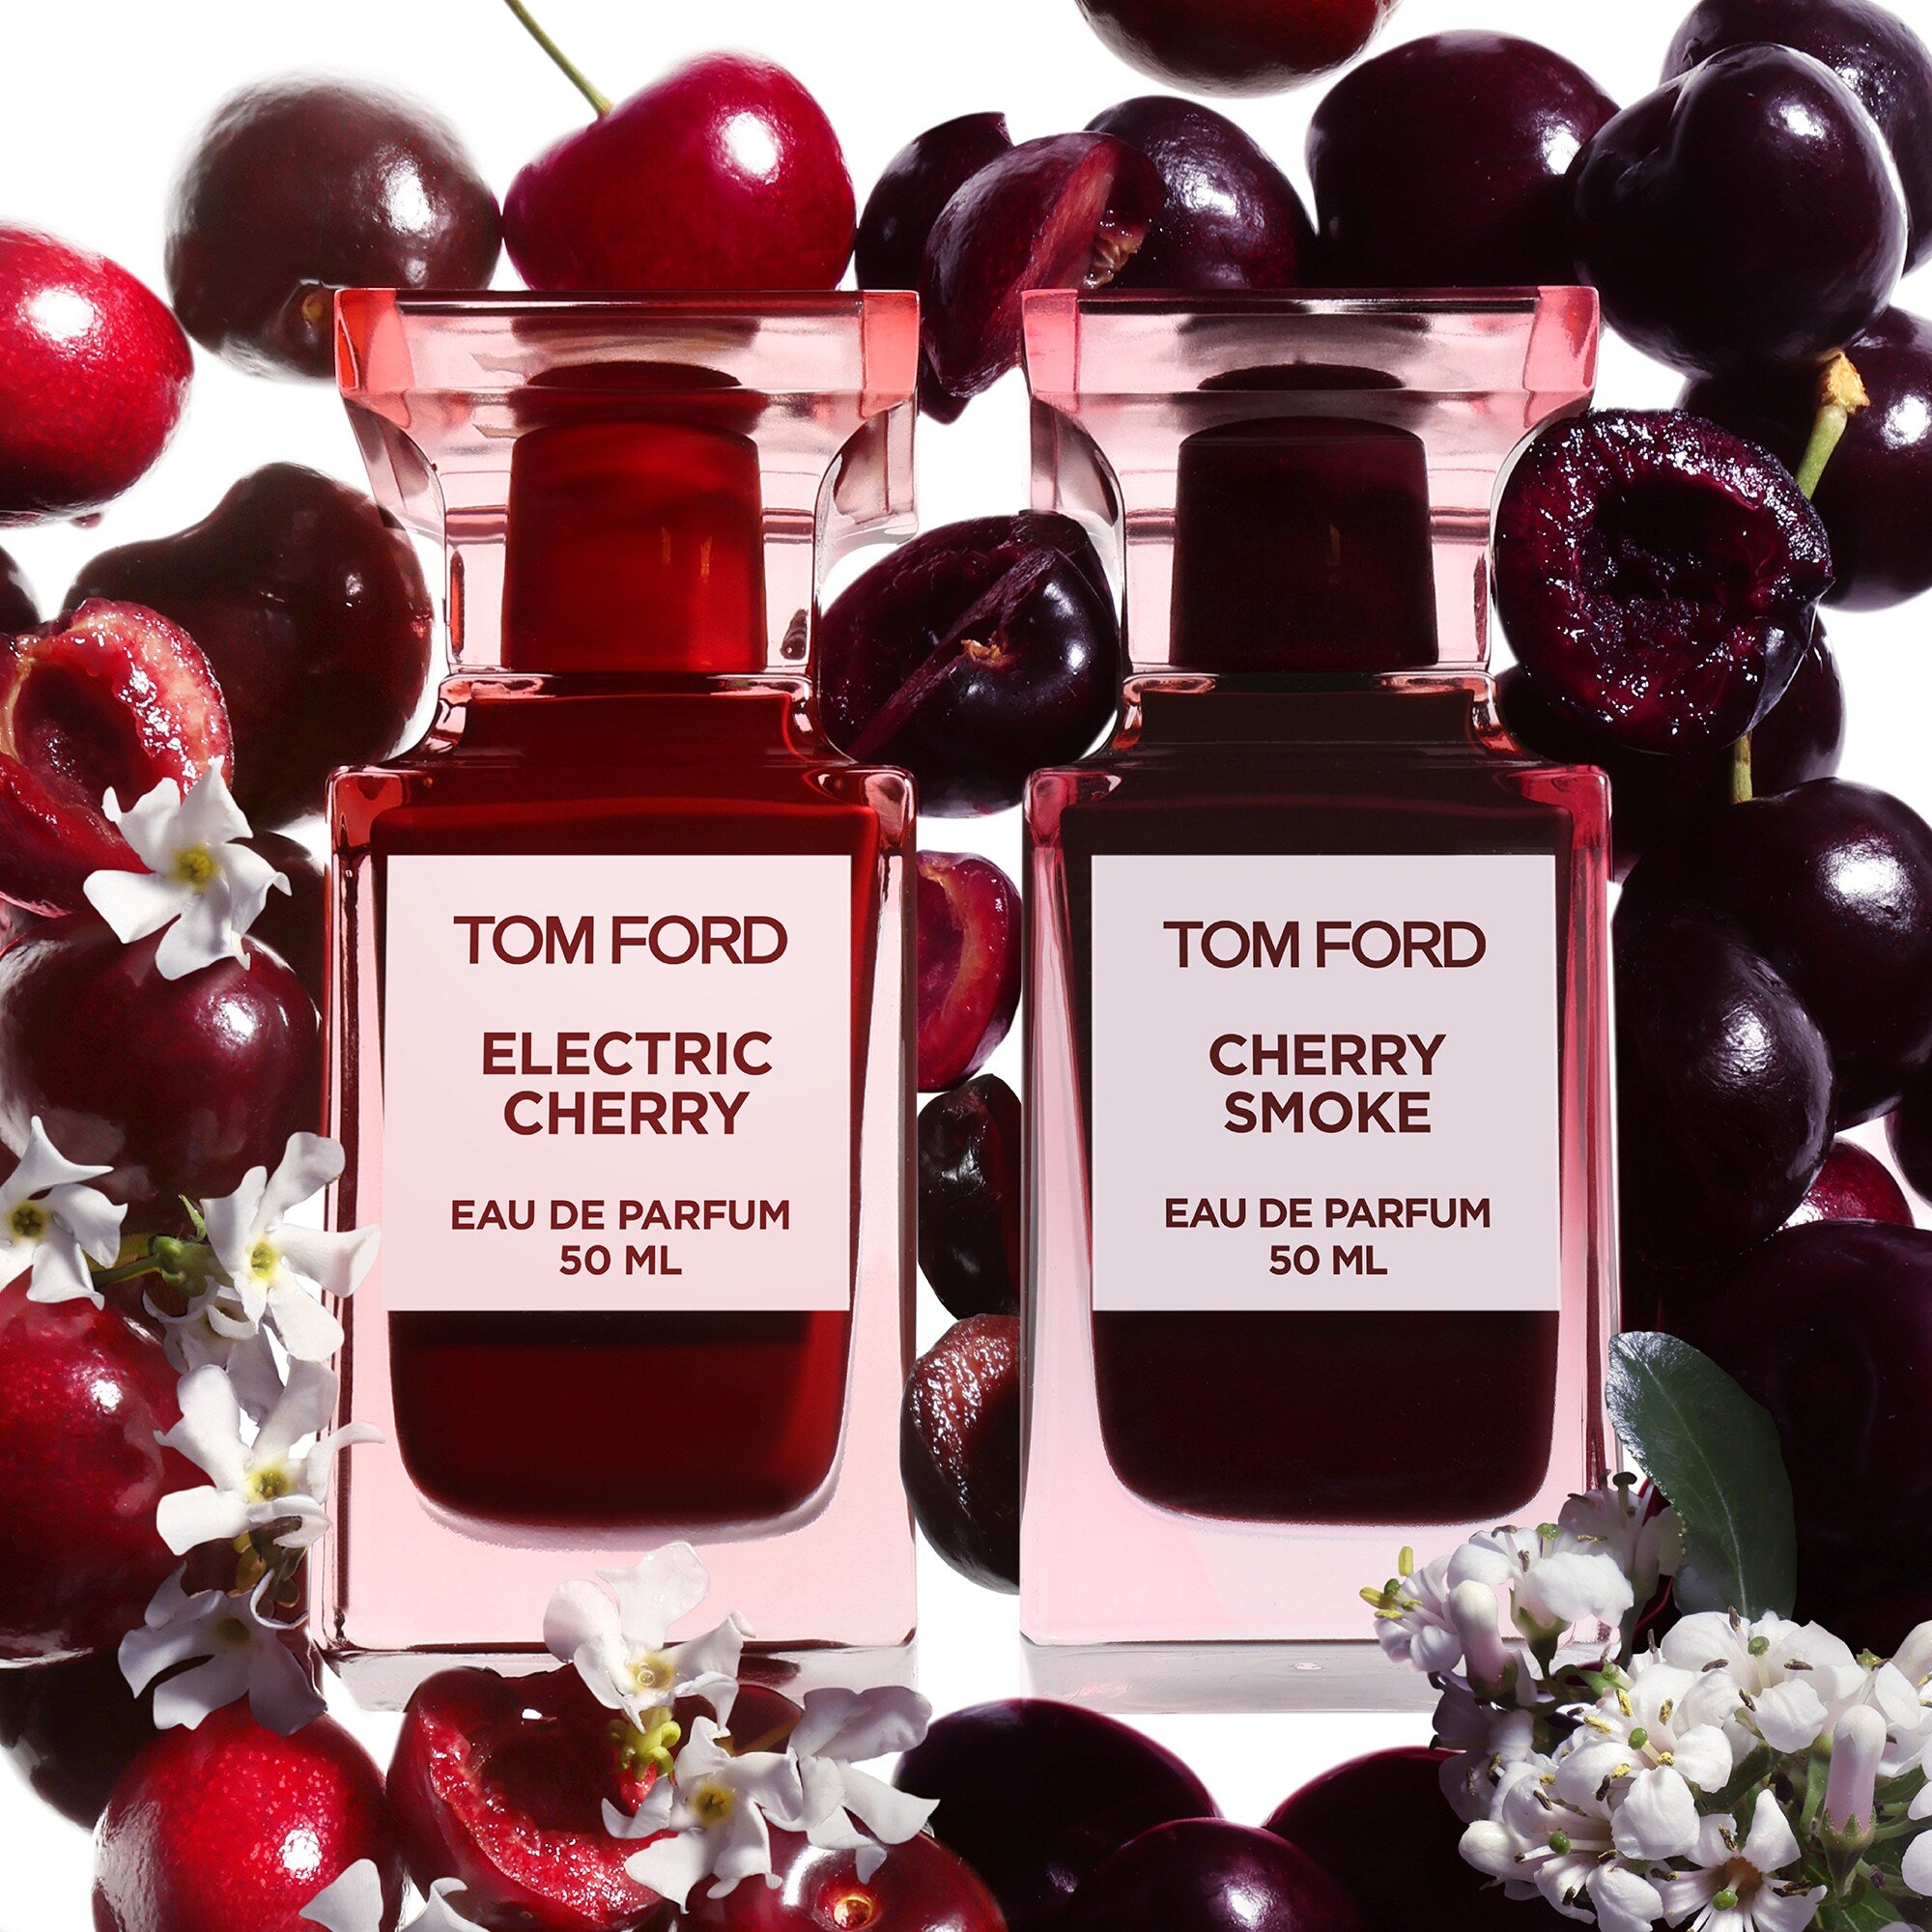 Nước Hoa TOM FORD Electric Cherry Eau De Parfum #50 mL